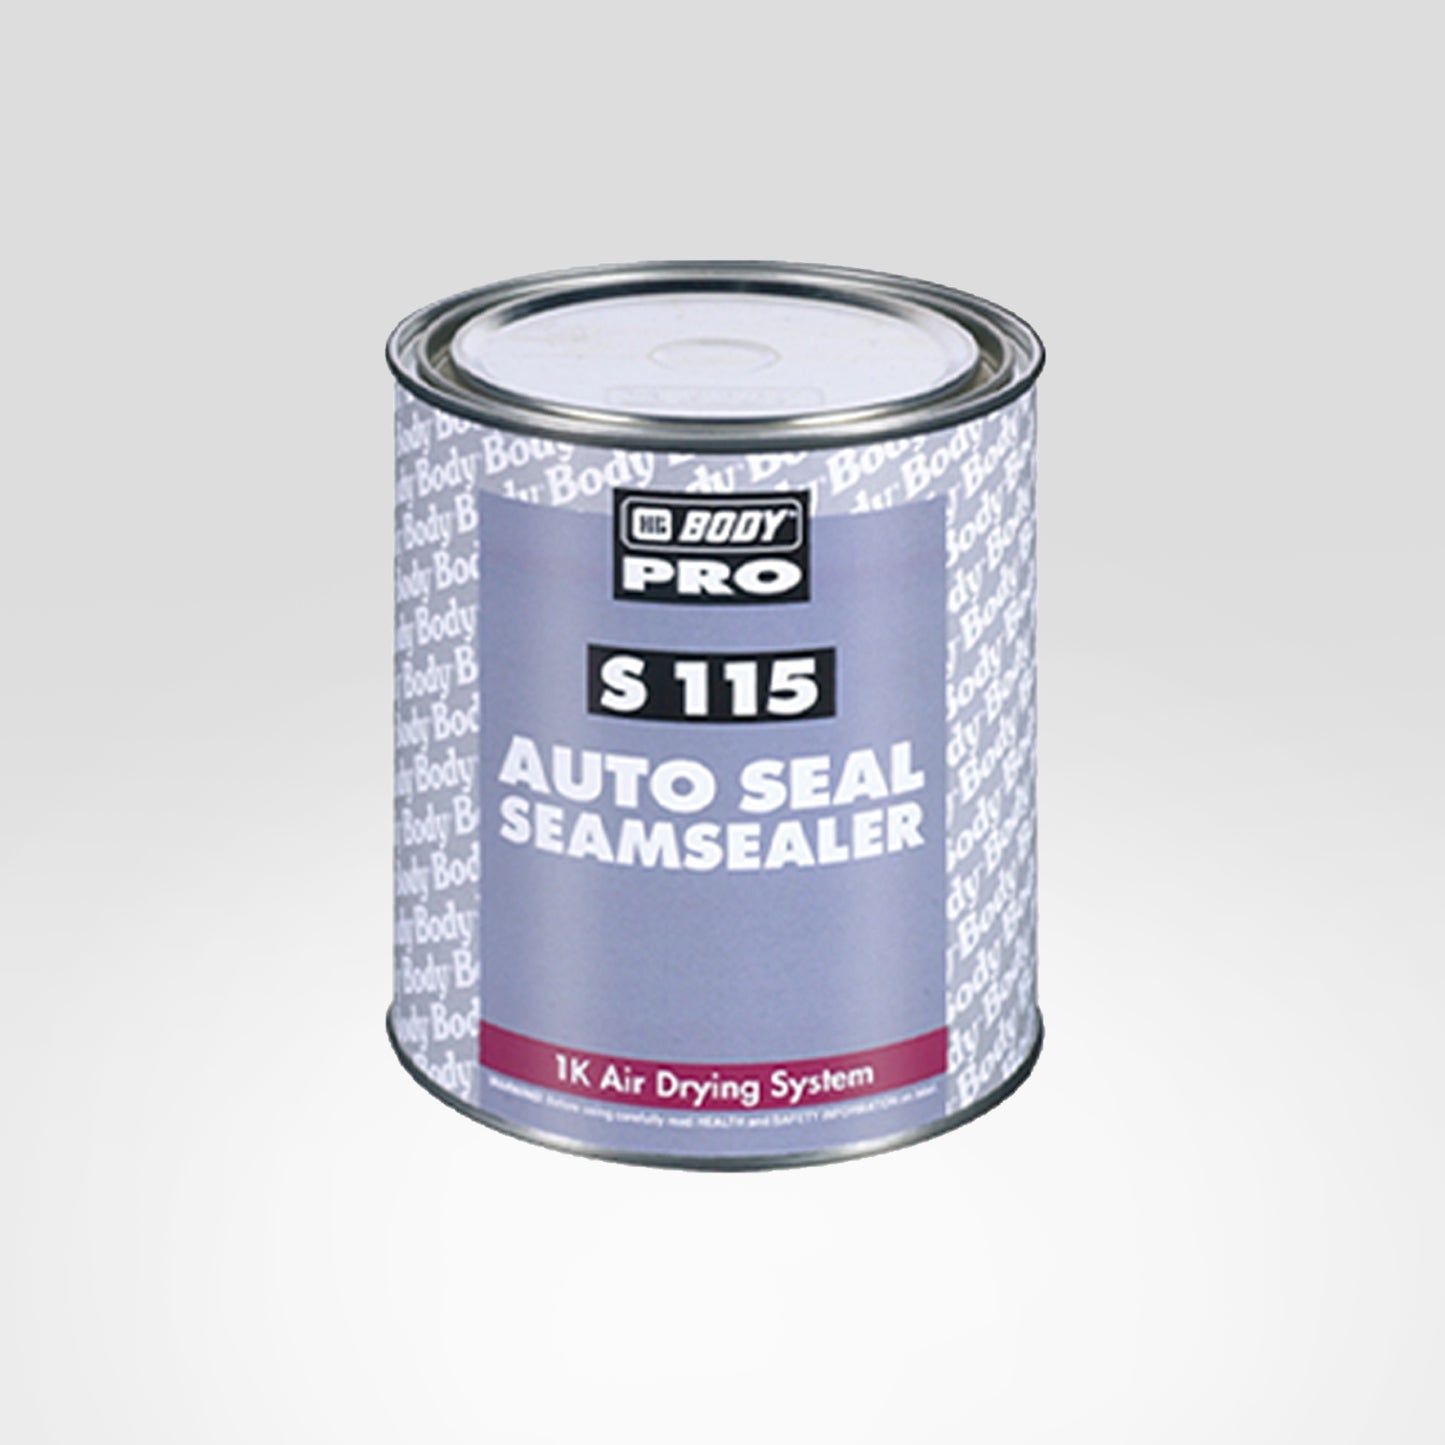 S115 BODY AUTOSEAL Seamsealer Grey 1Kg/Can